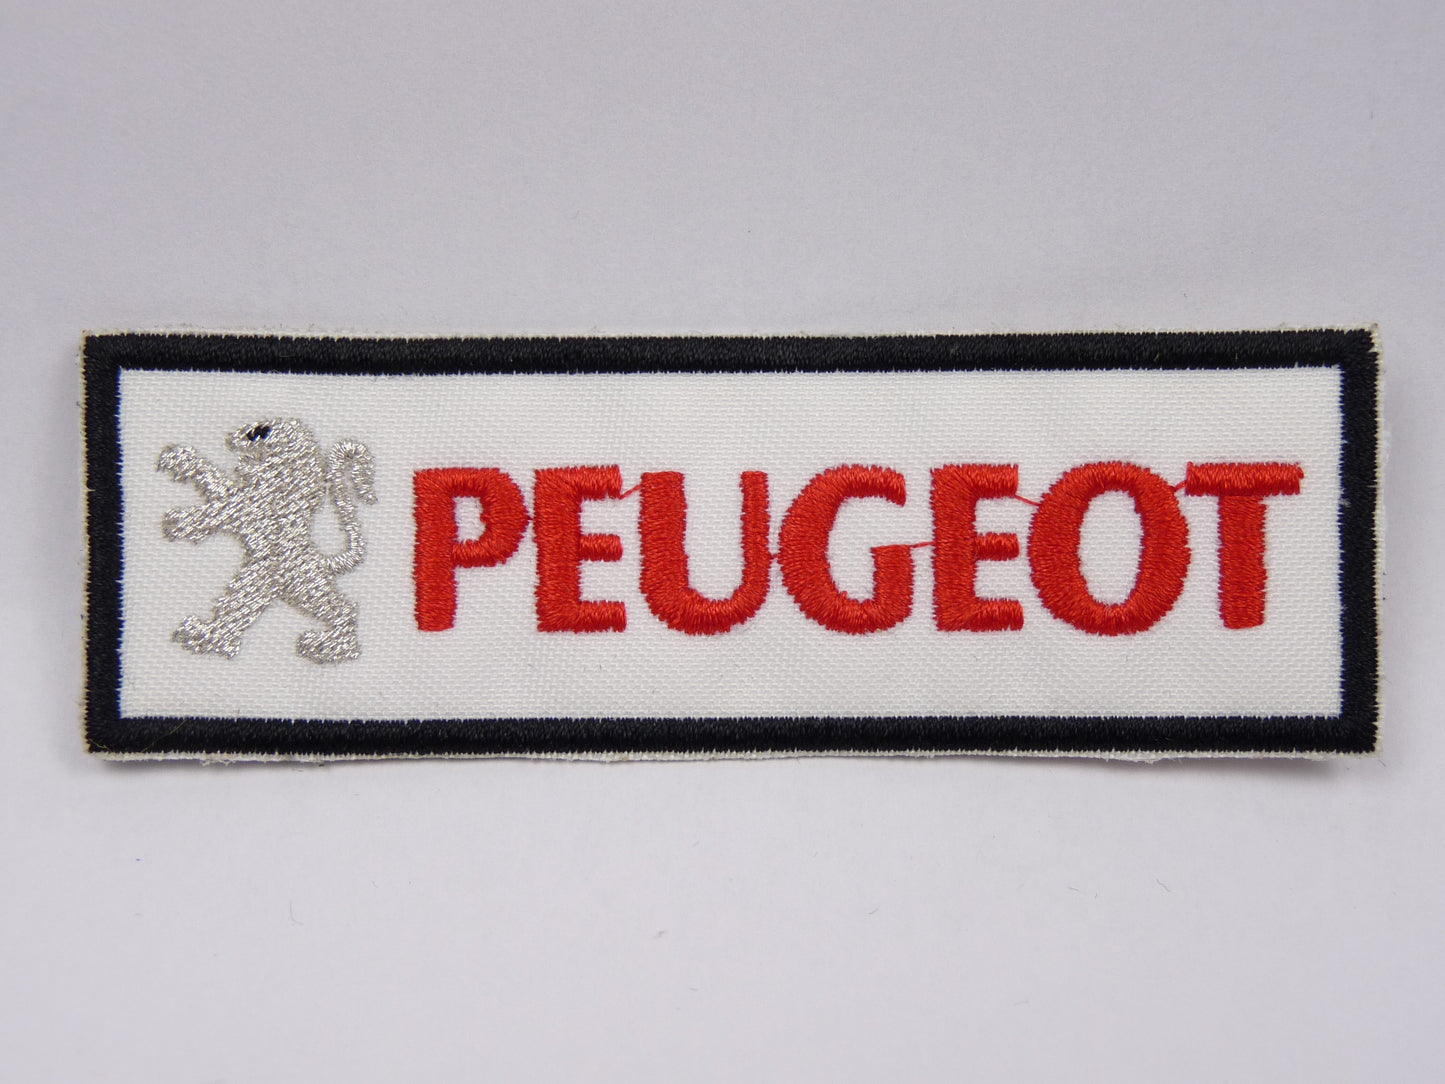 PTC111 Patch brodé thermocollé : logo Peugeot Rectangle largeur environ 10.3 cm hauteur environ 3.4 cm